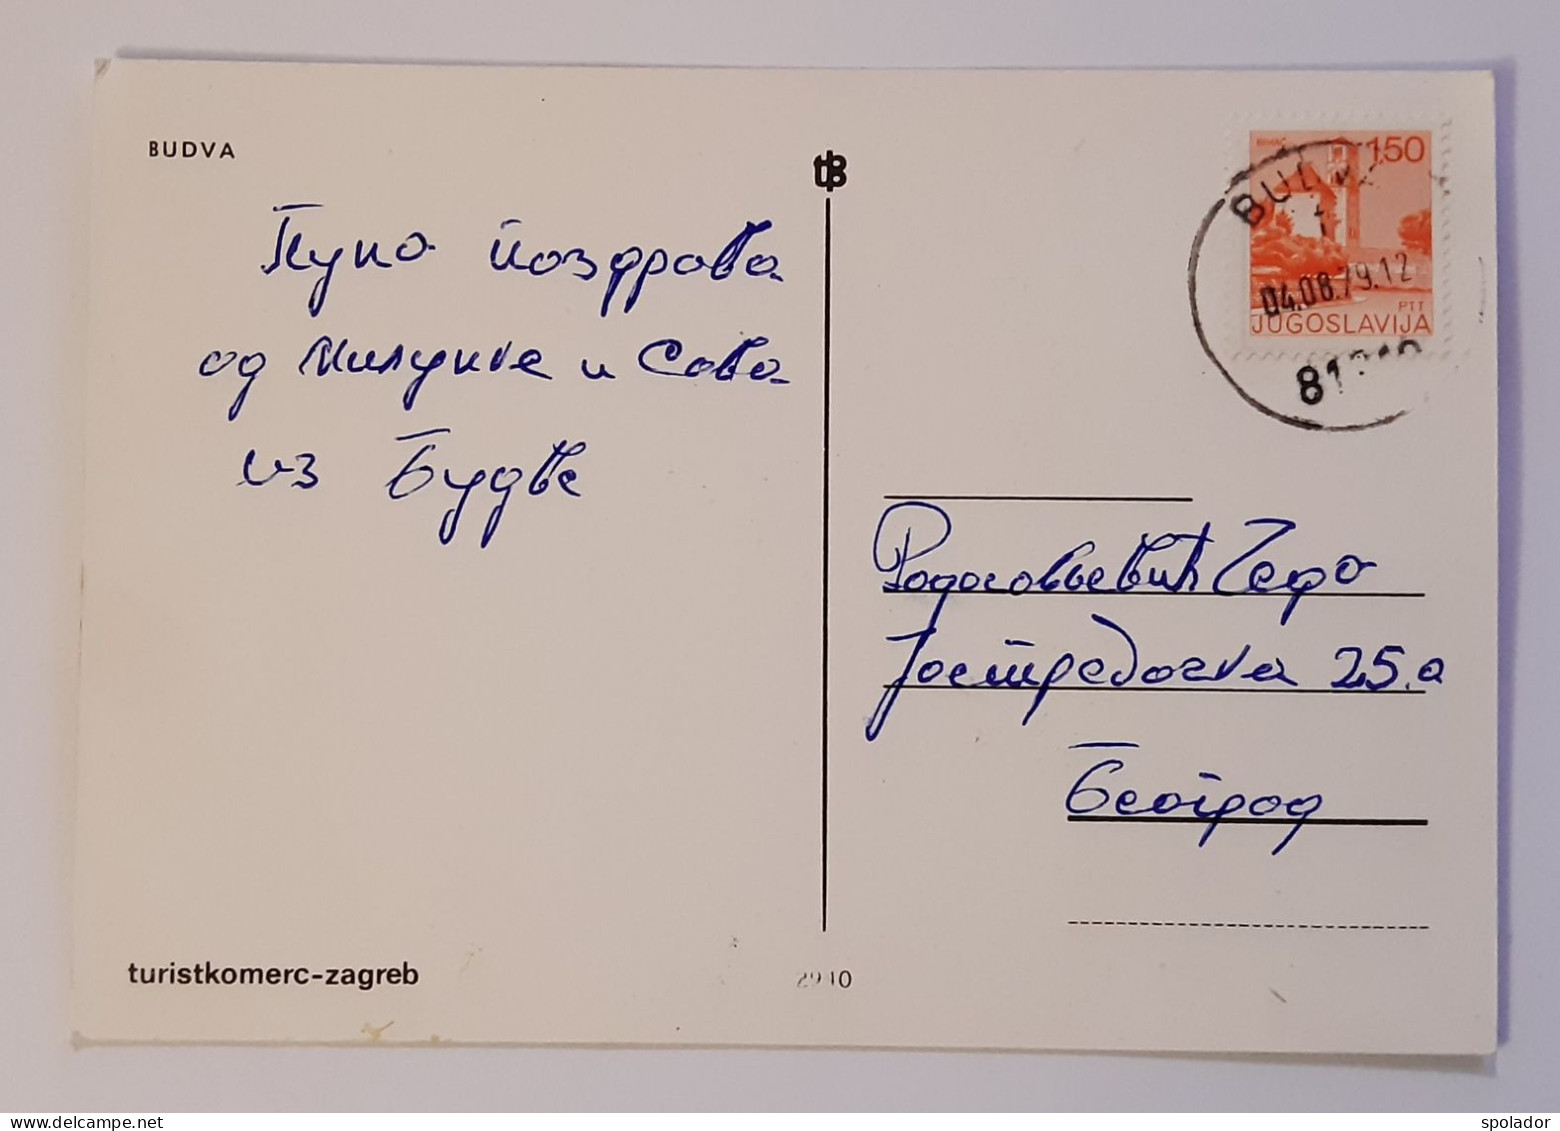 BUDVA-Ex-Yugoslavia-Vintage Panorama Postcard-Montenegro-Crna Gora-used With Stamp 1979 - Yugoslavia